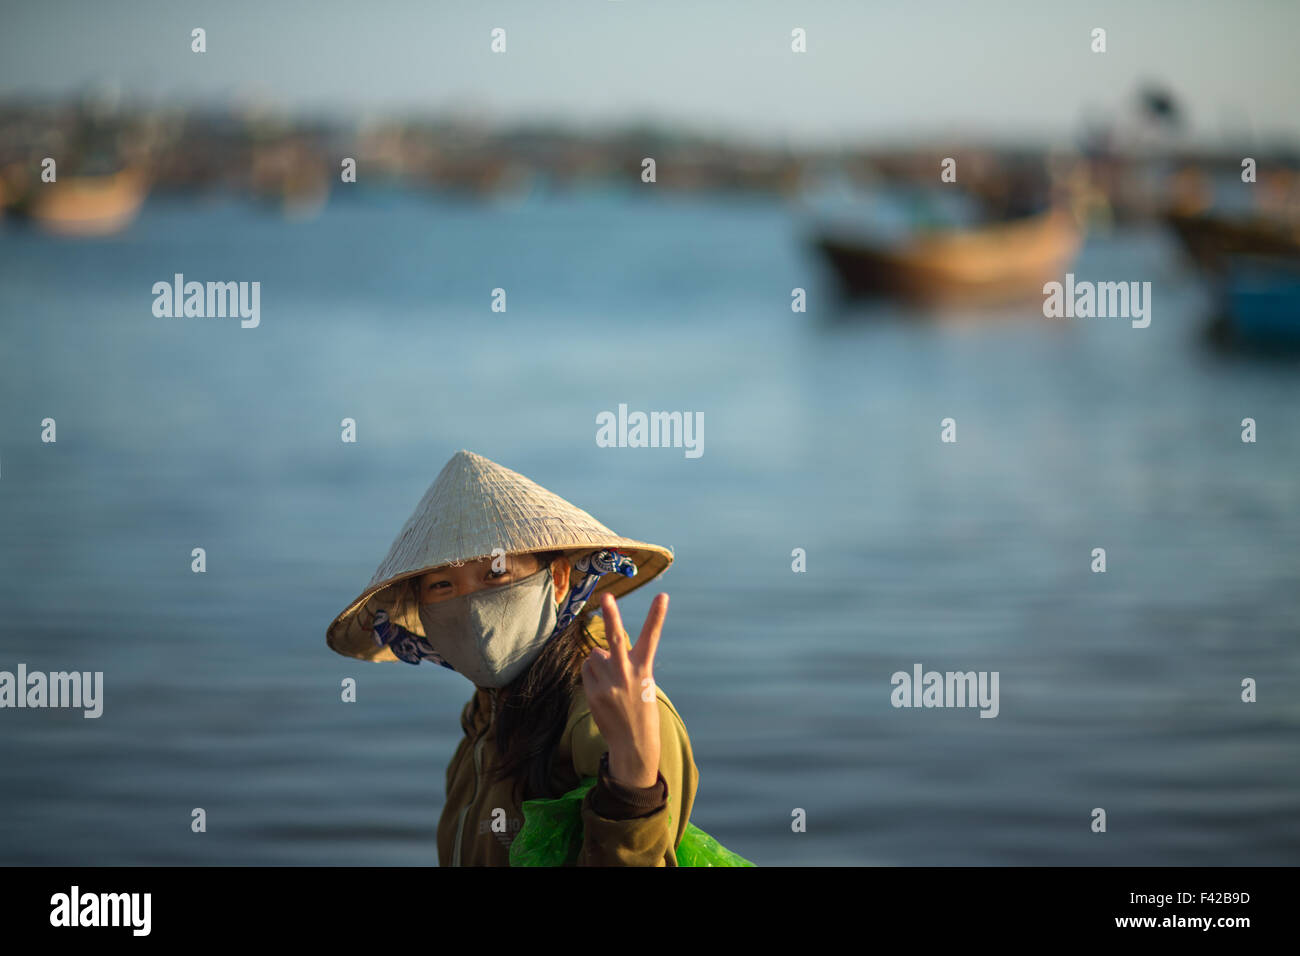 Né Mũi aldea pesquera, Provincia Thuận Bình, Vietnam Foto de stock